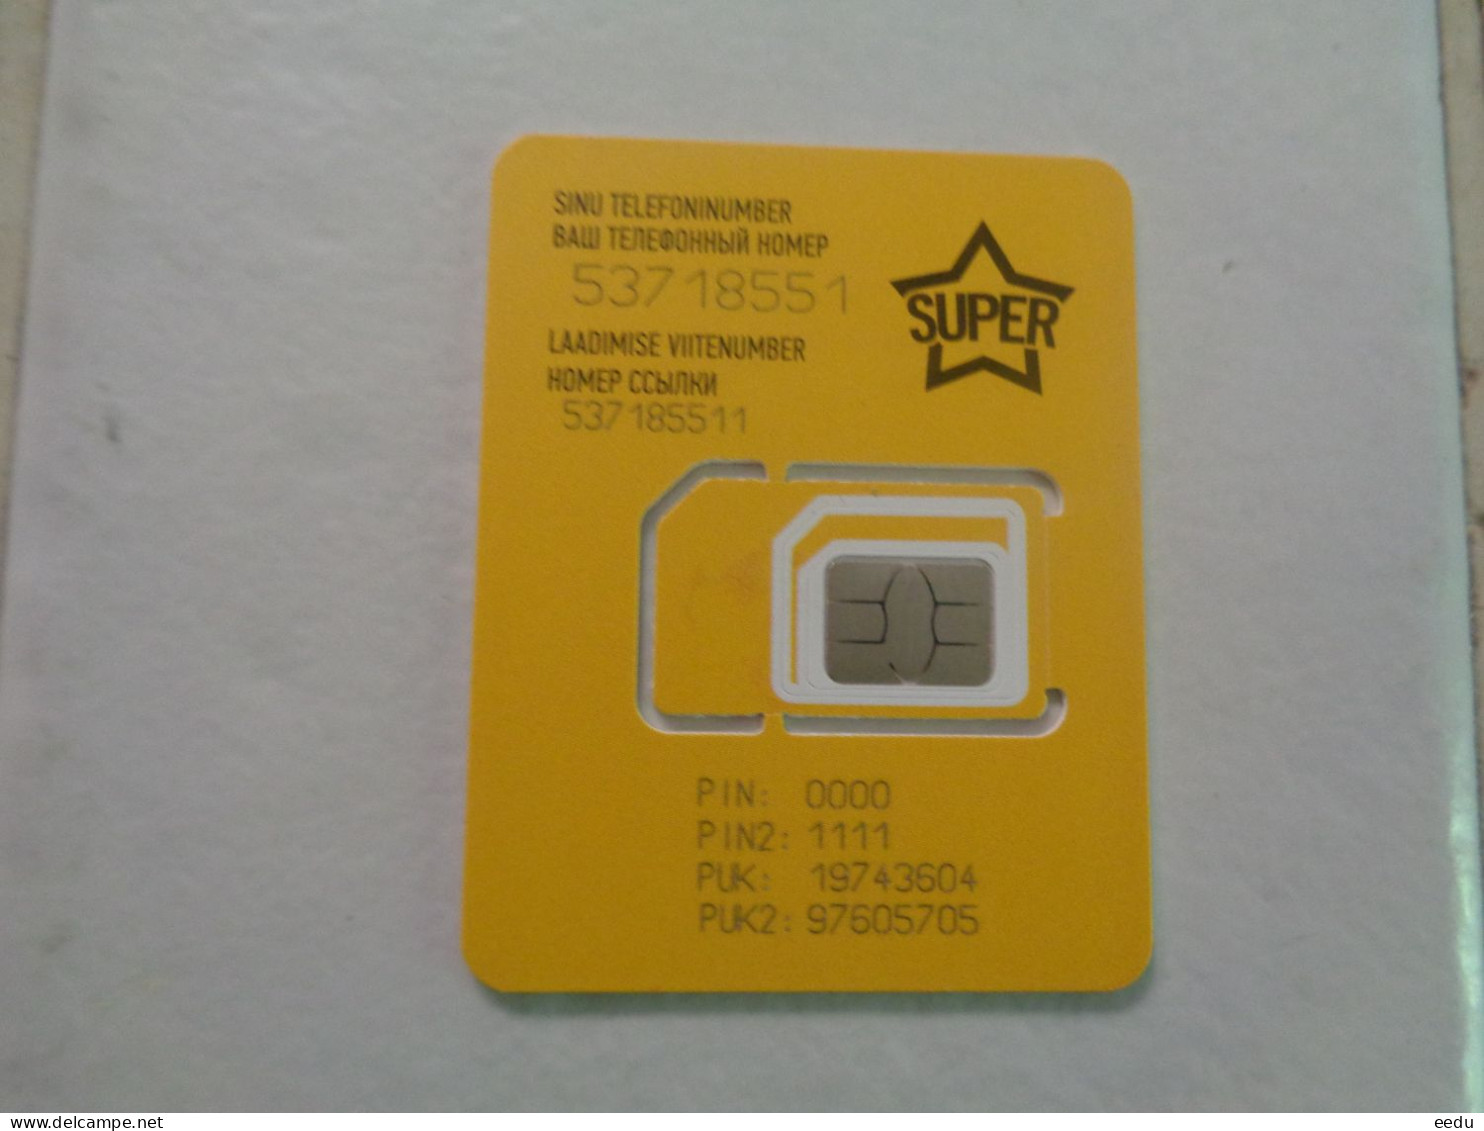 Estonia Mint GSM Phonecard - Estonie